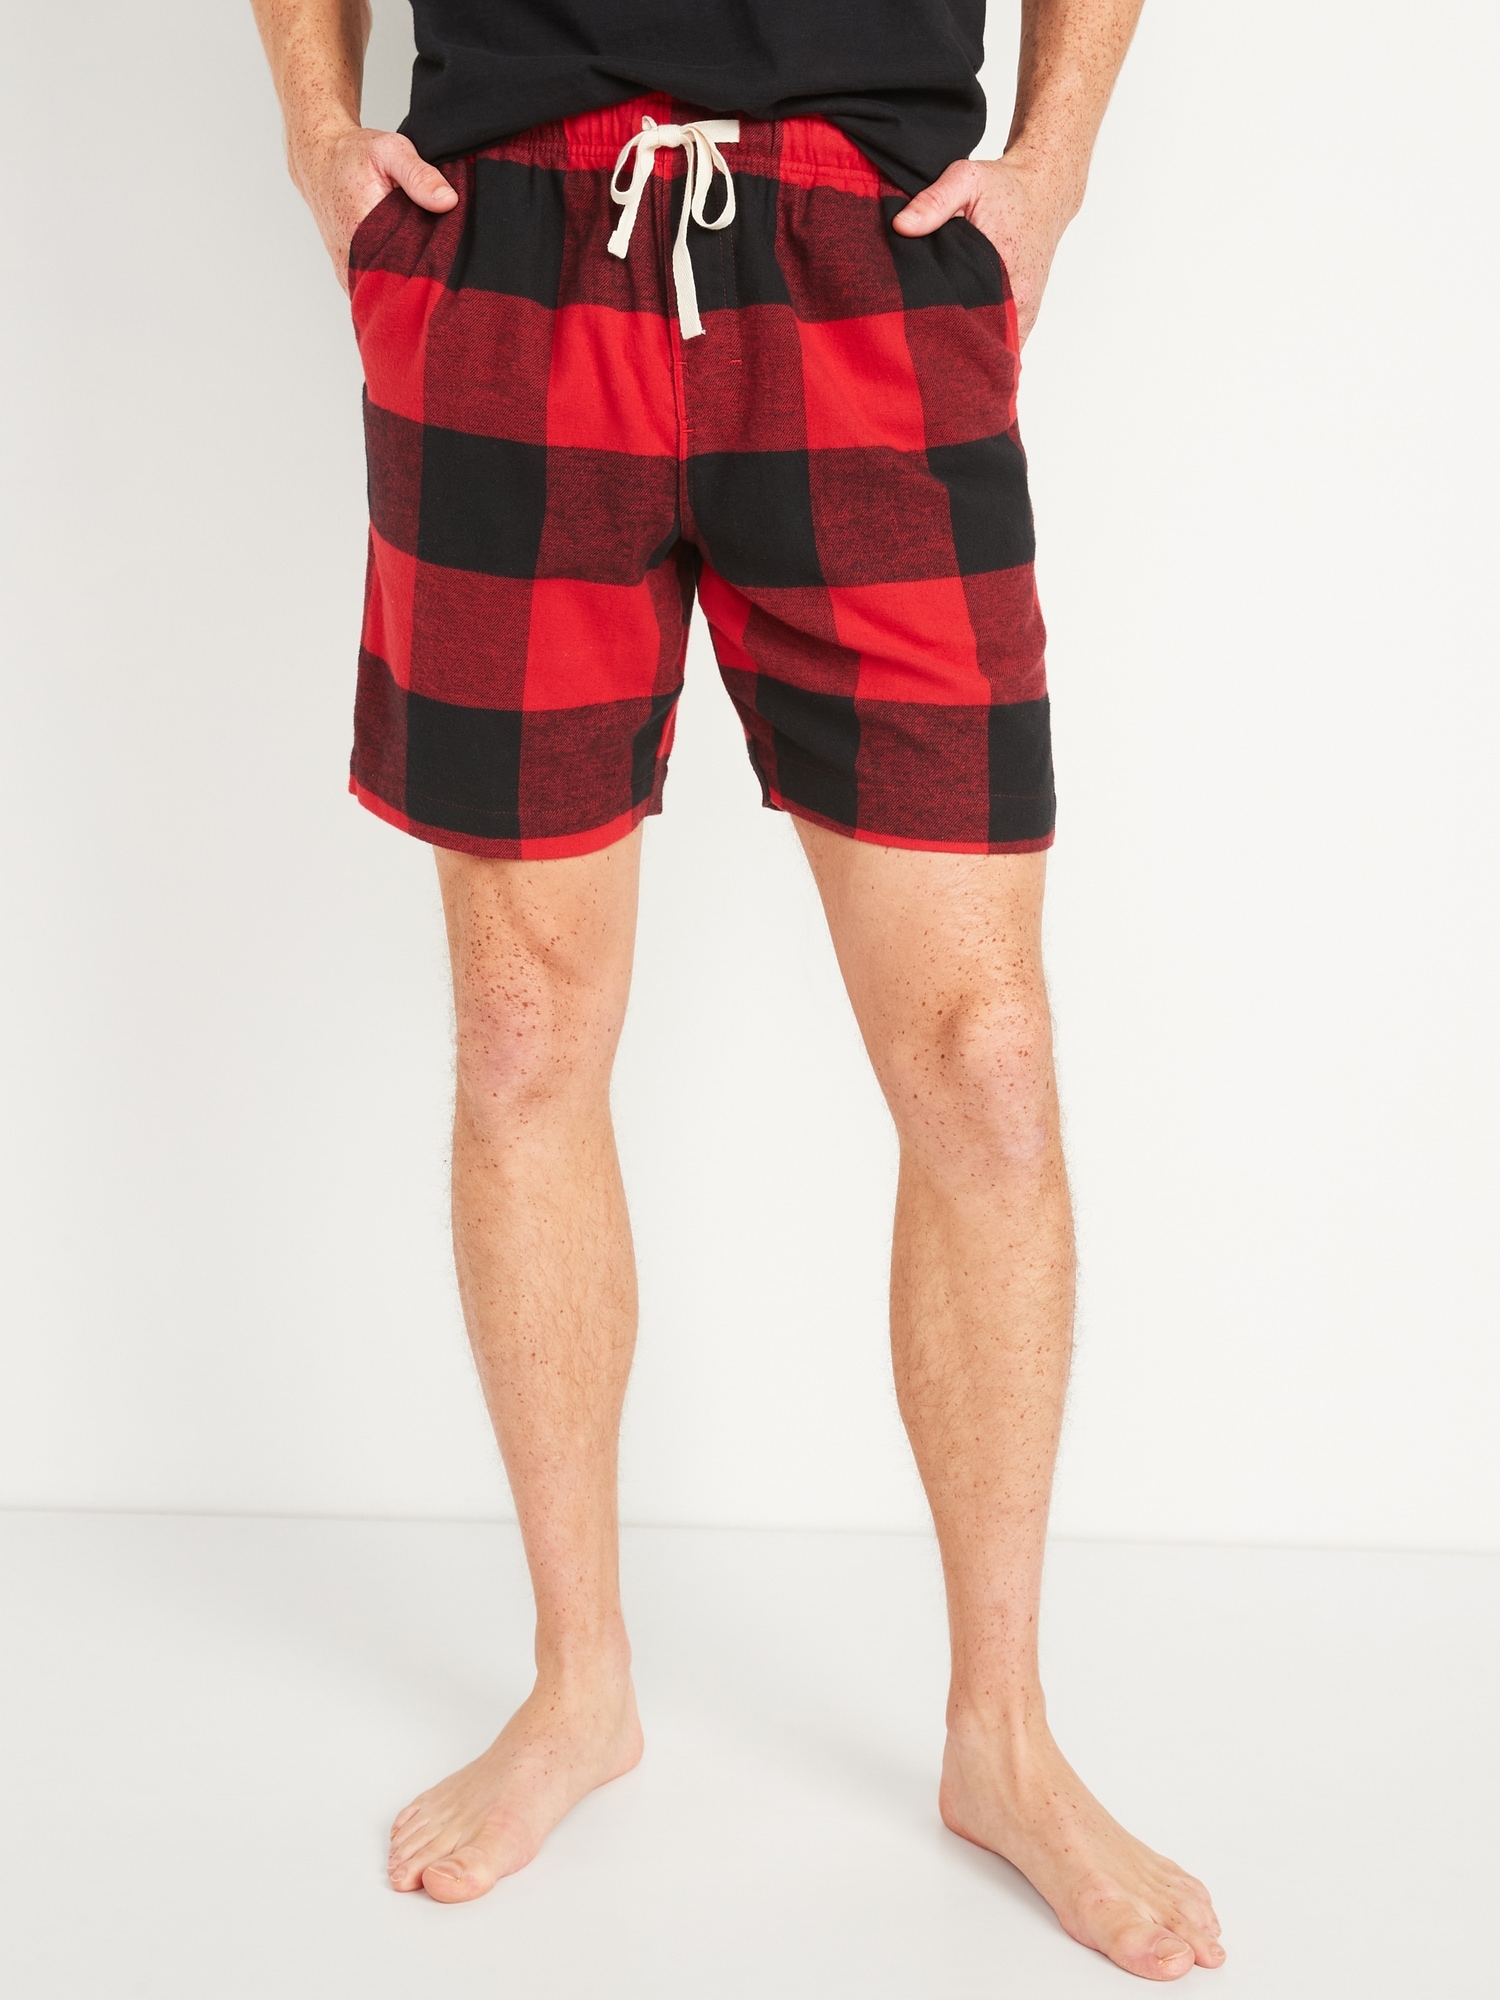 plaid pajama shorts